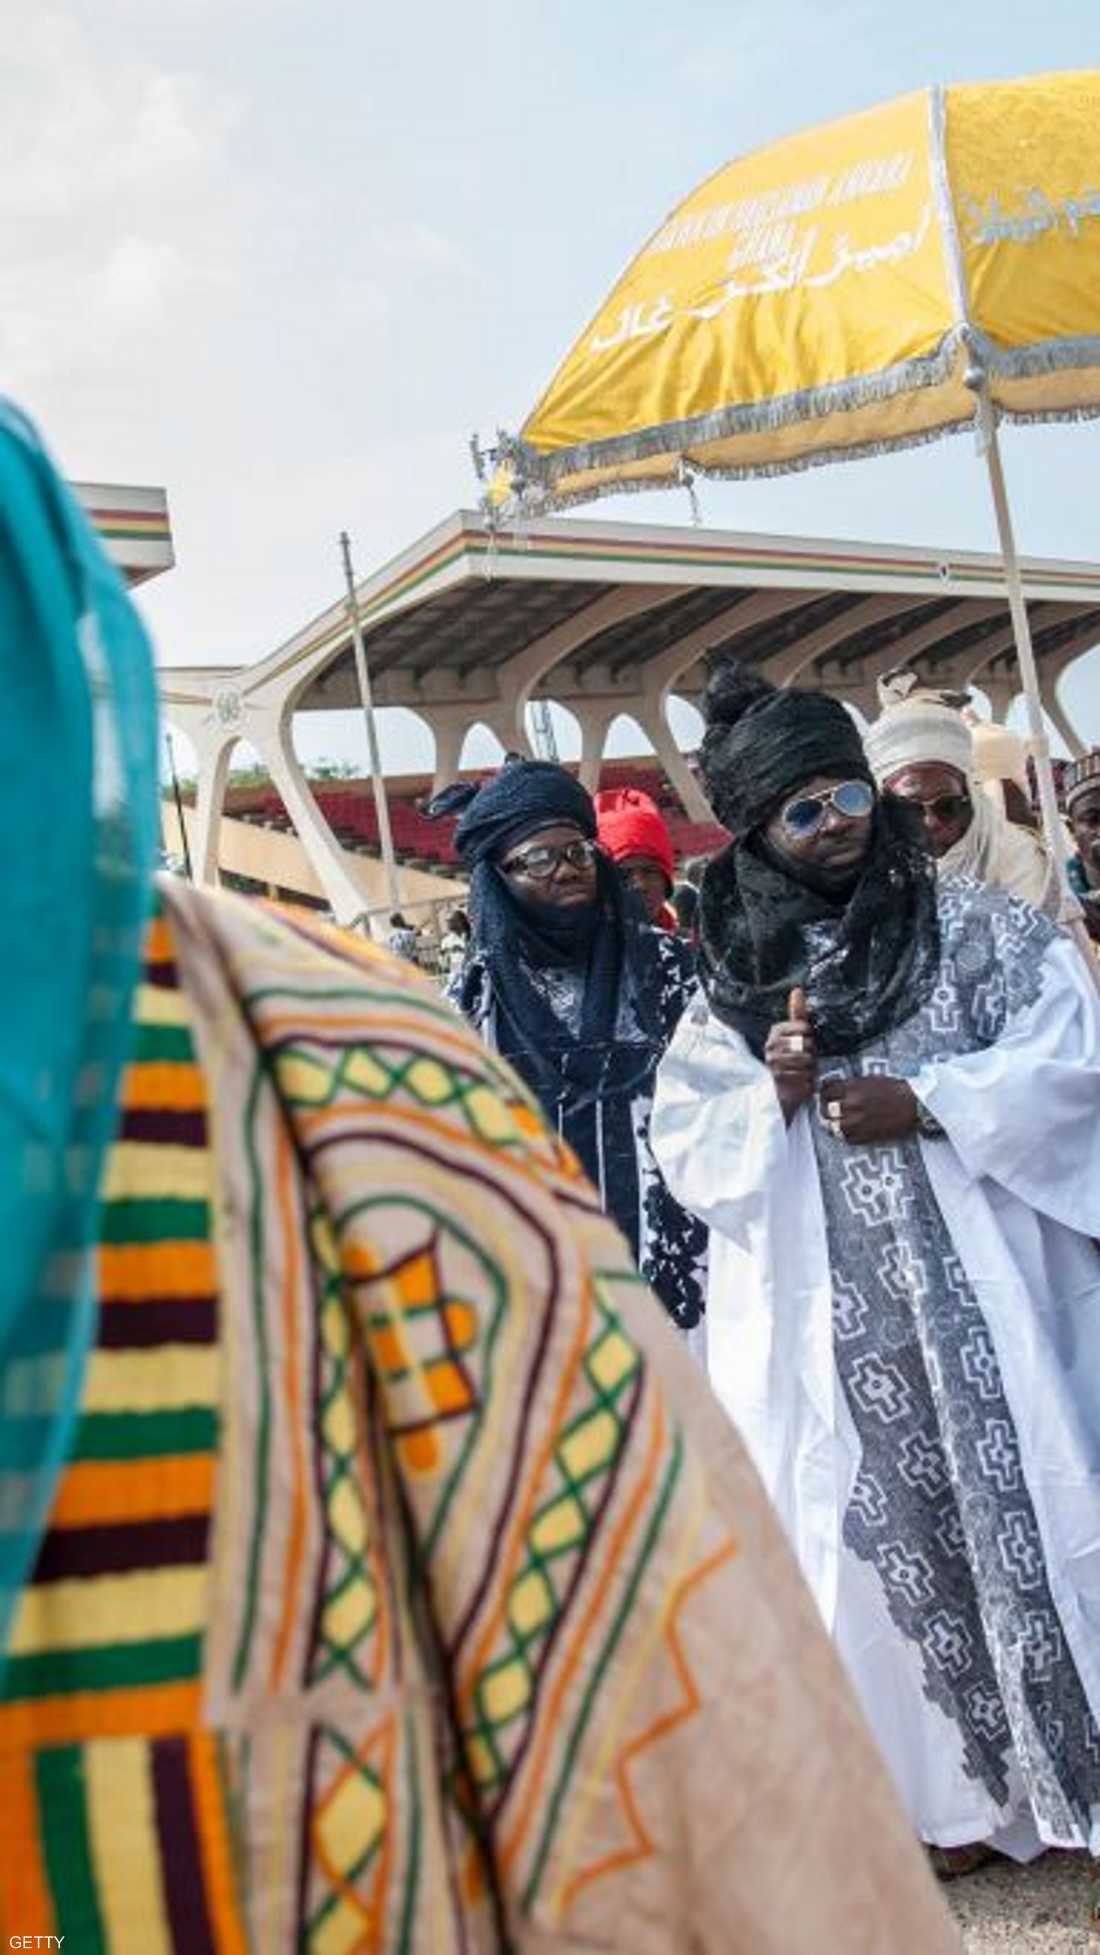 زعماء دين يرتدون الزي التقليدي في غانا يوم العيد